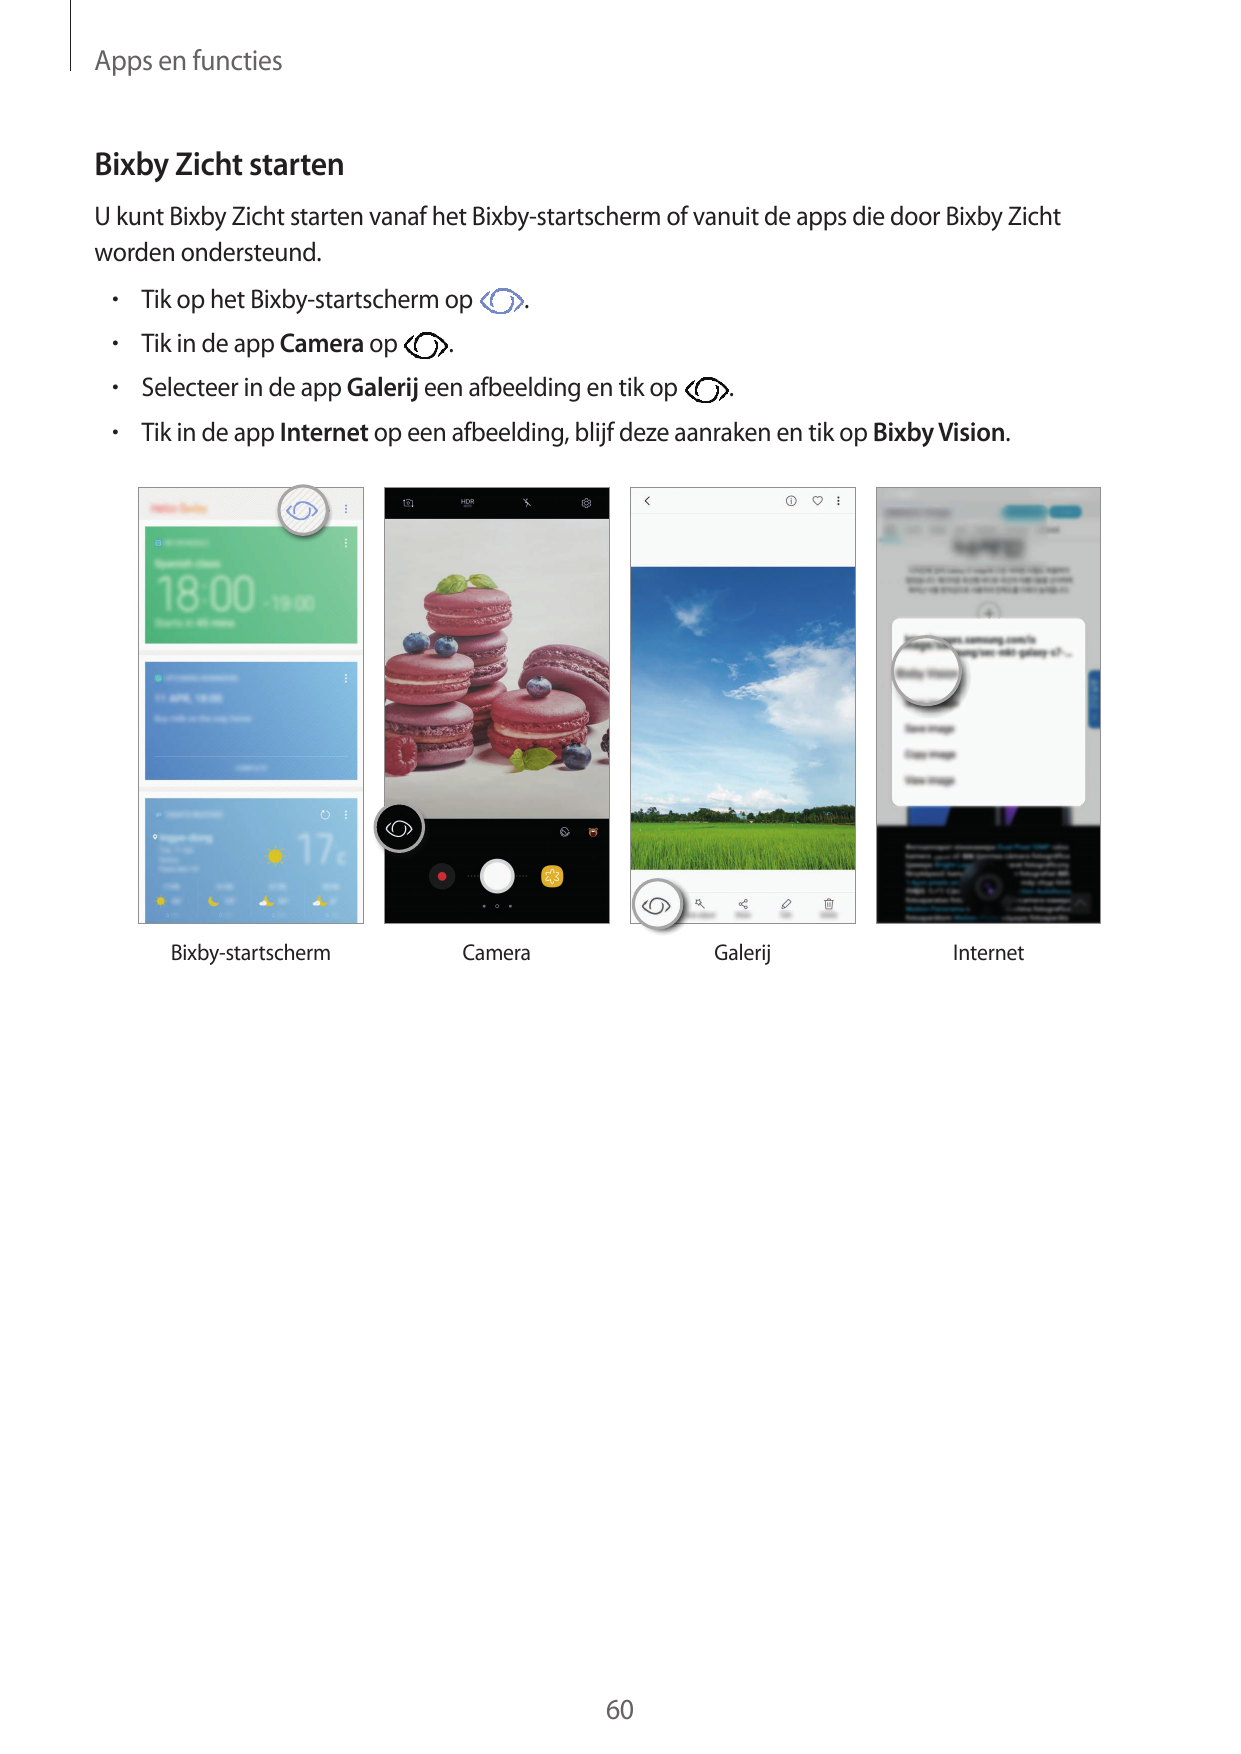 Apps en functiesBixby Zicht startenU kunt Bixby Zicht starten vanaf het Bixby-startscherm of vanuit de apps die door Bixby Zicht